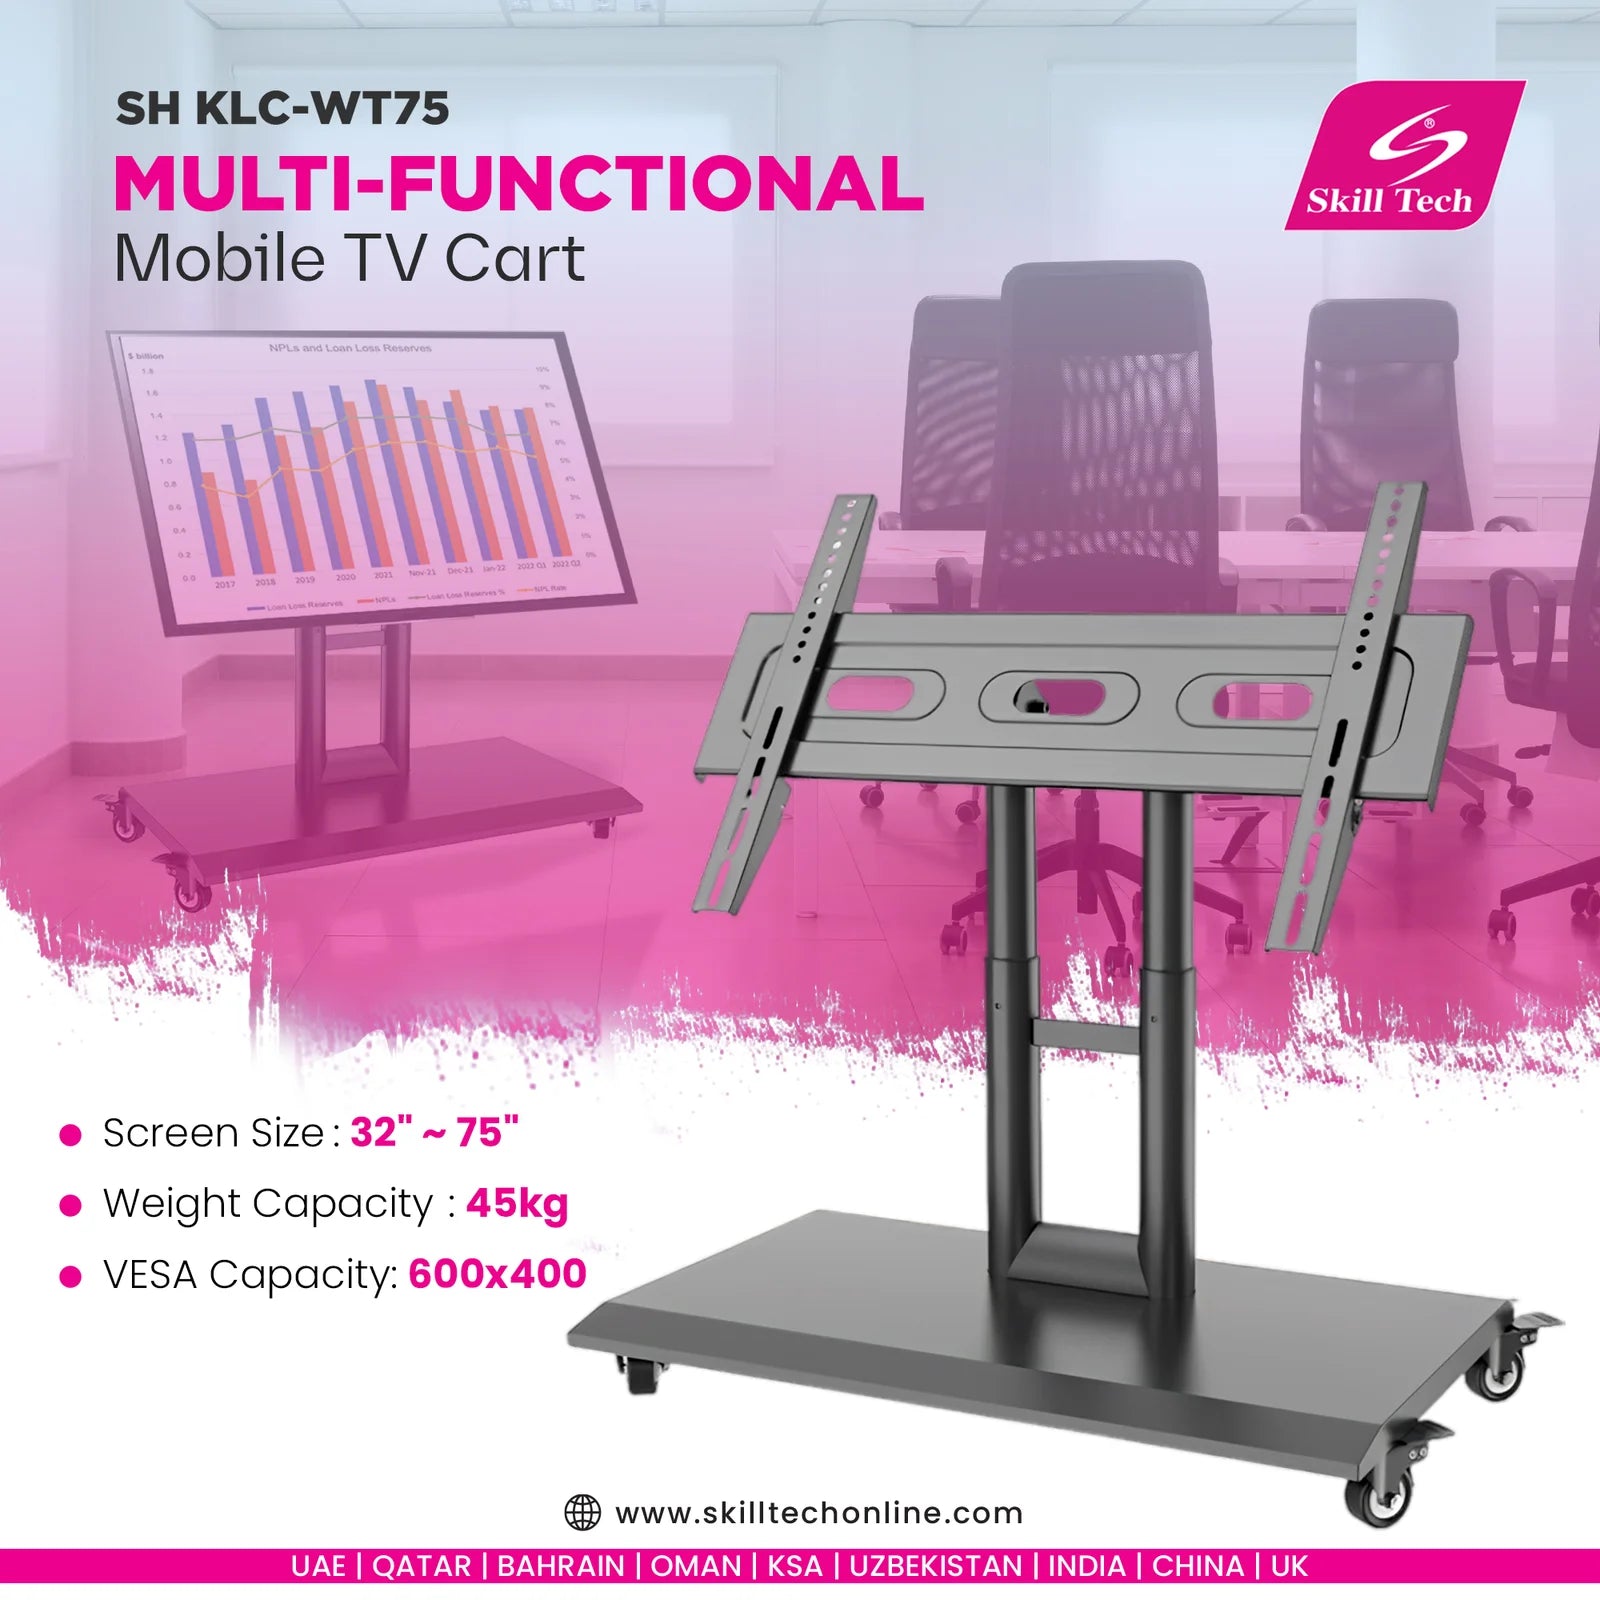 Skilltech-SH KLC-WT75 - Multi-Functional Mobile TV Cart